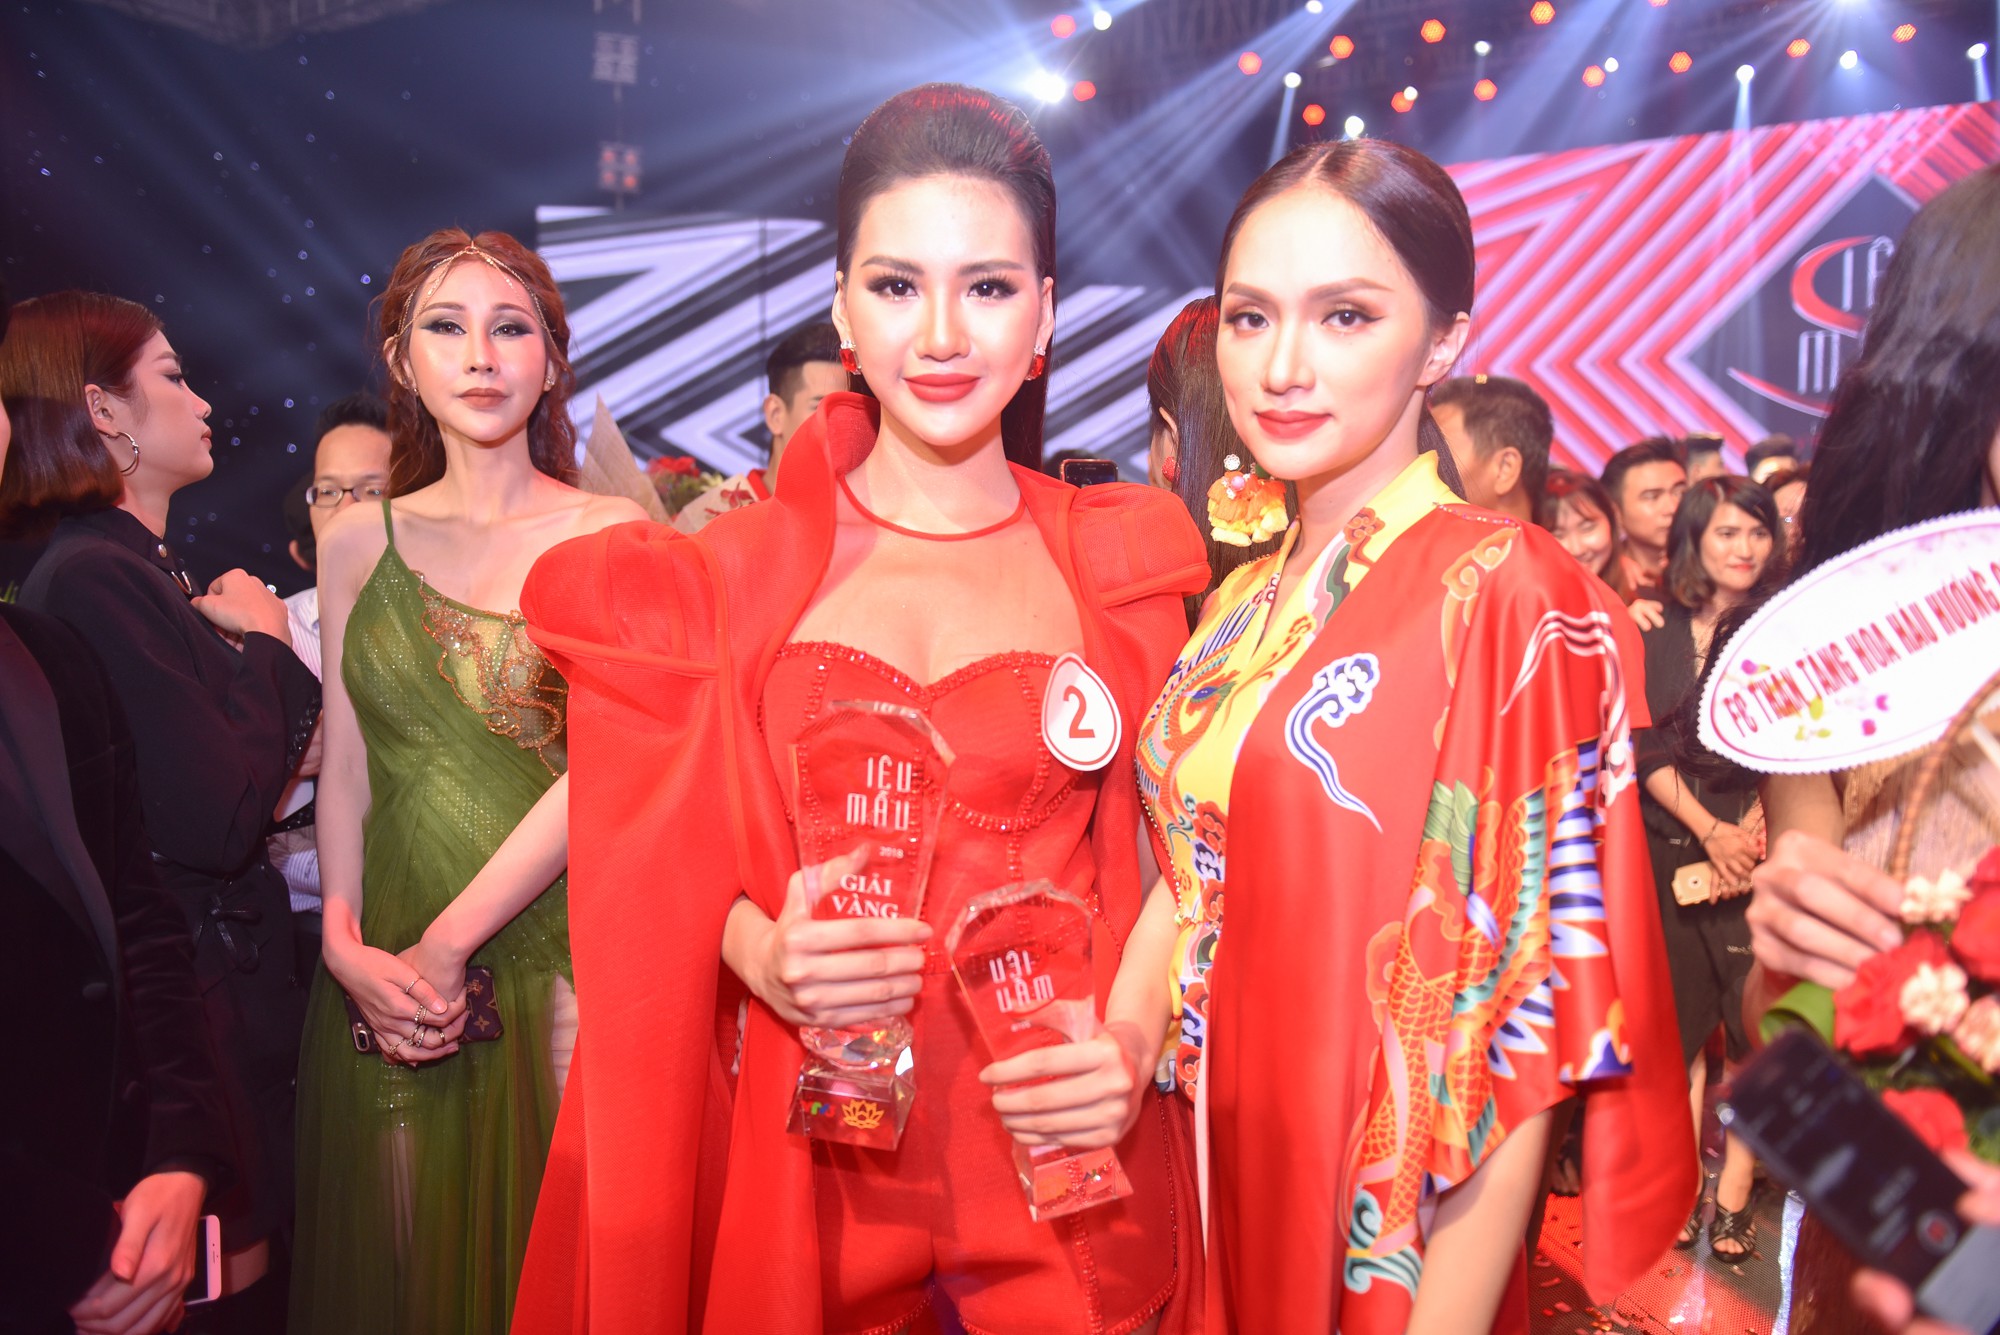 Siêu mẫu Việt Nam 2018 gọi tên học trò Hương Giang: Khán giả hoang mang vì không biết thi siêu mẫu hay thi Hoa hậu  - Ảnh 1.